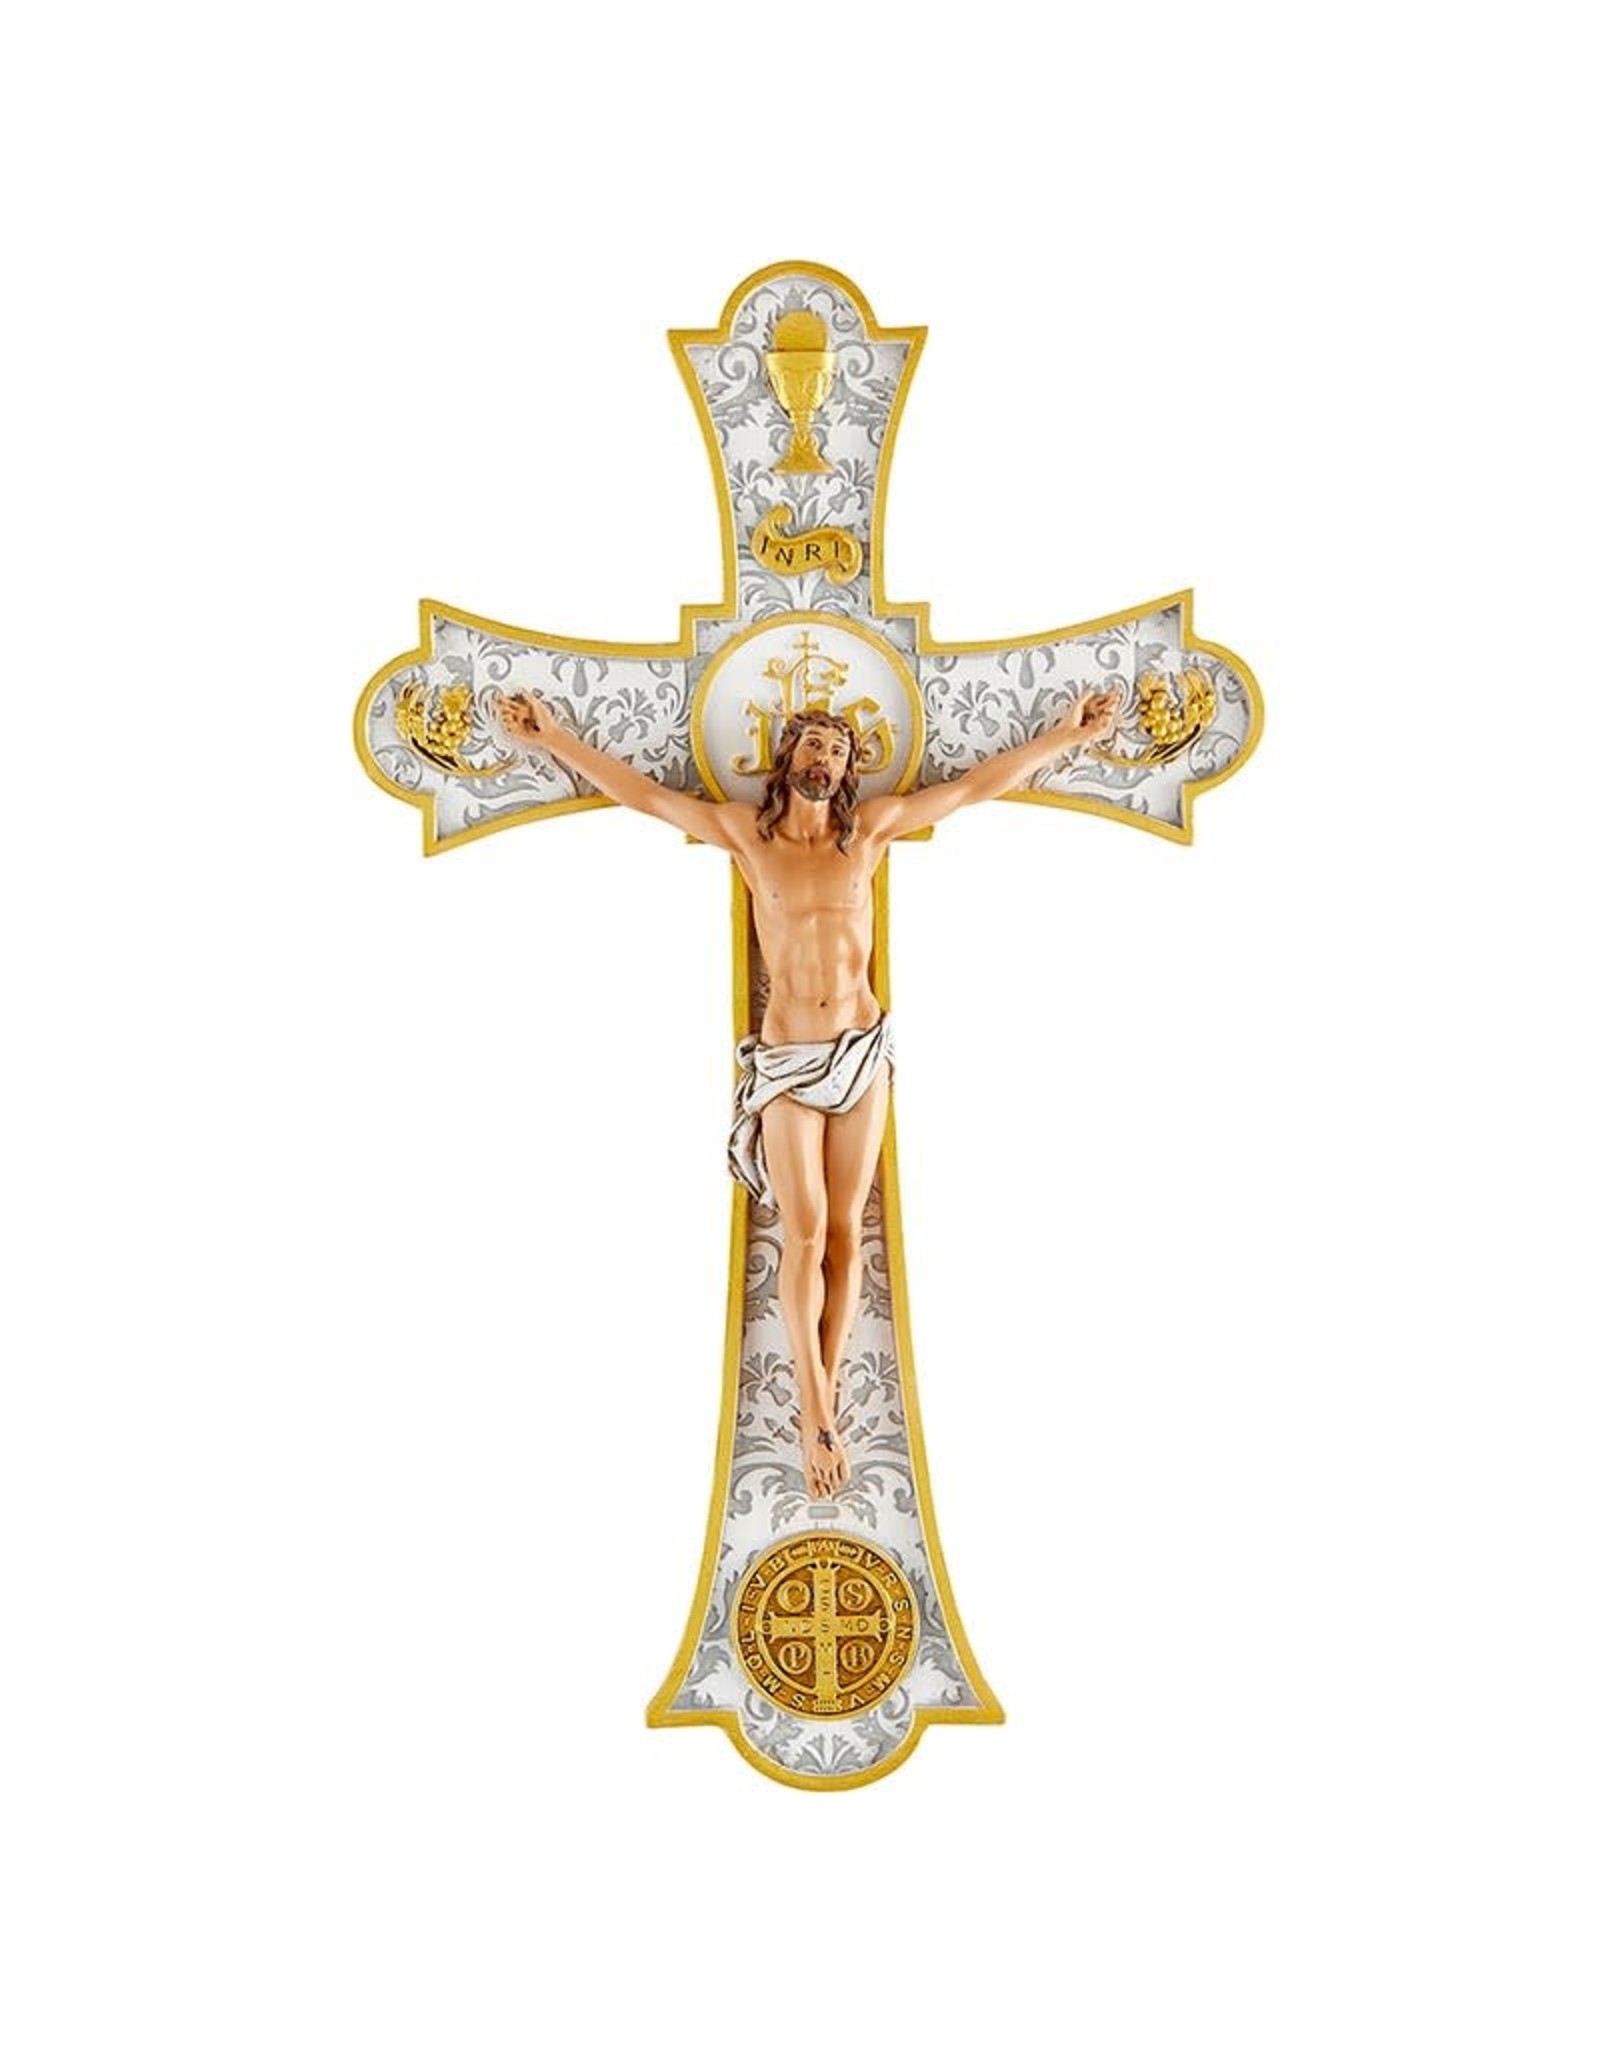 Jeweled Cross Wall Crucifix, Holy Mass,  8"